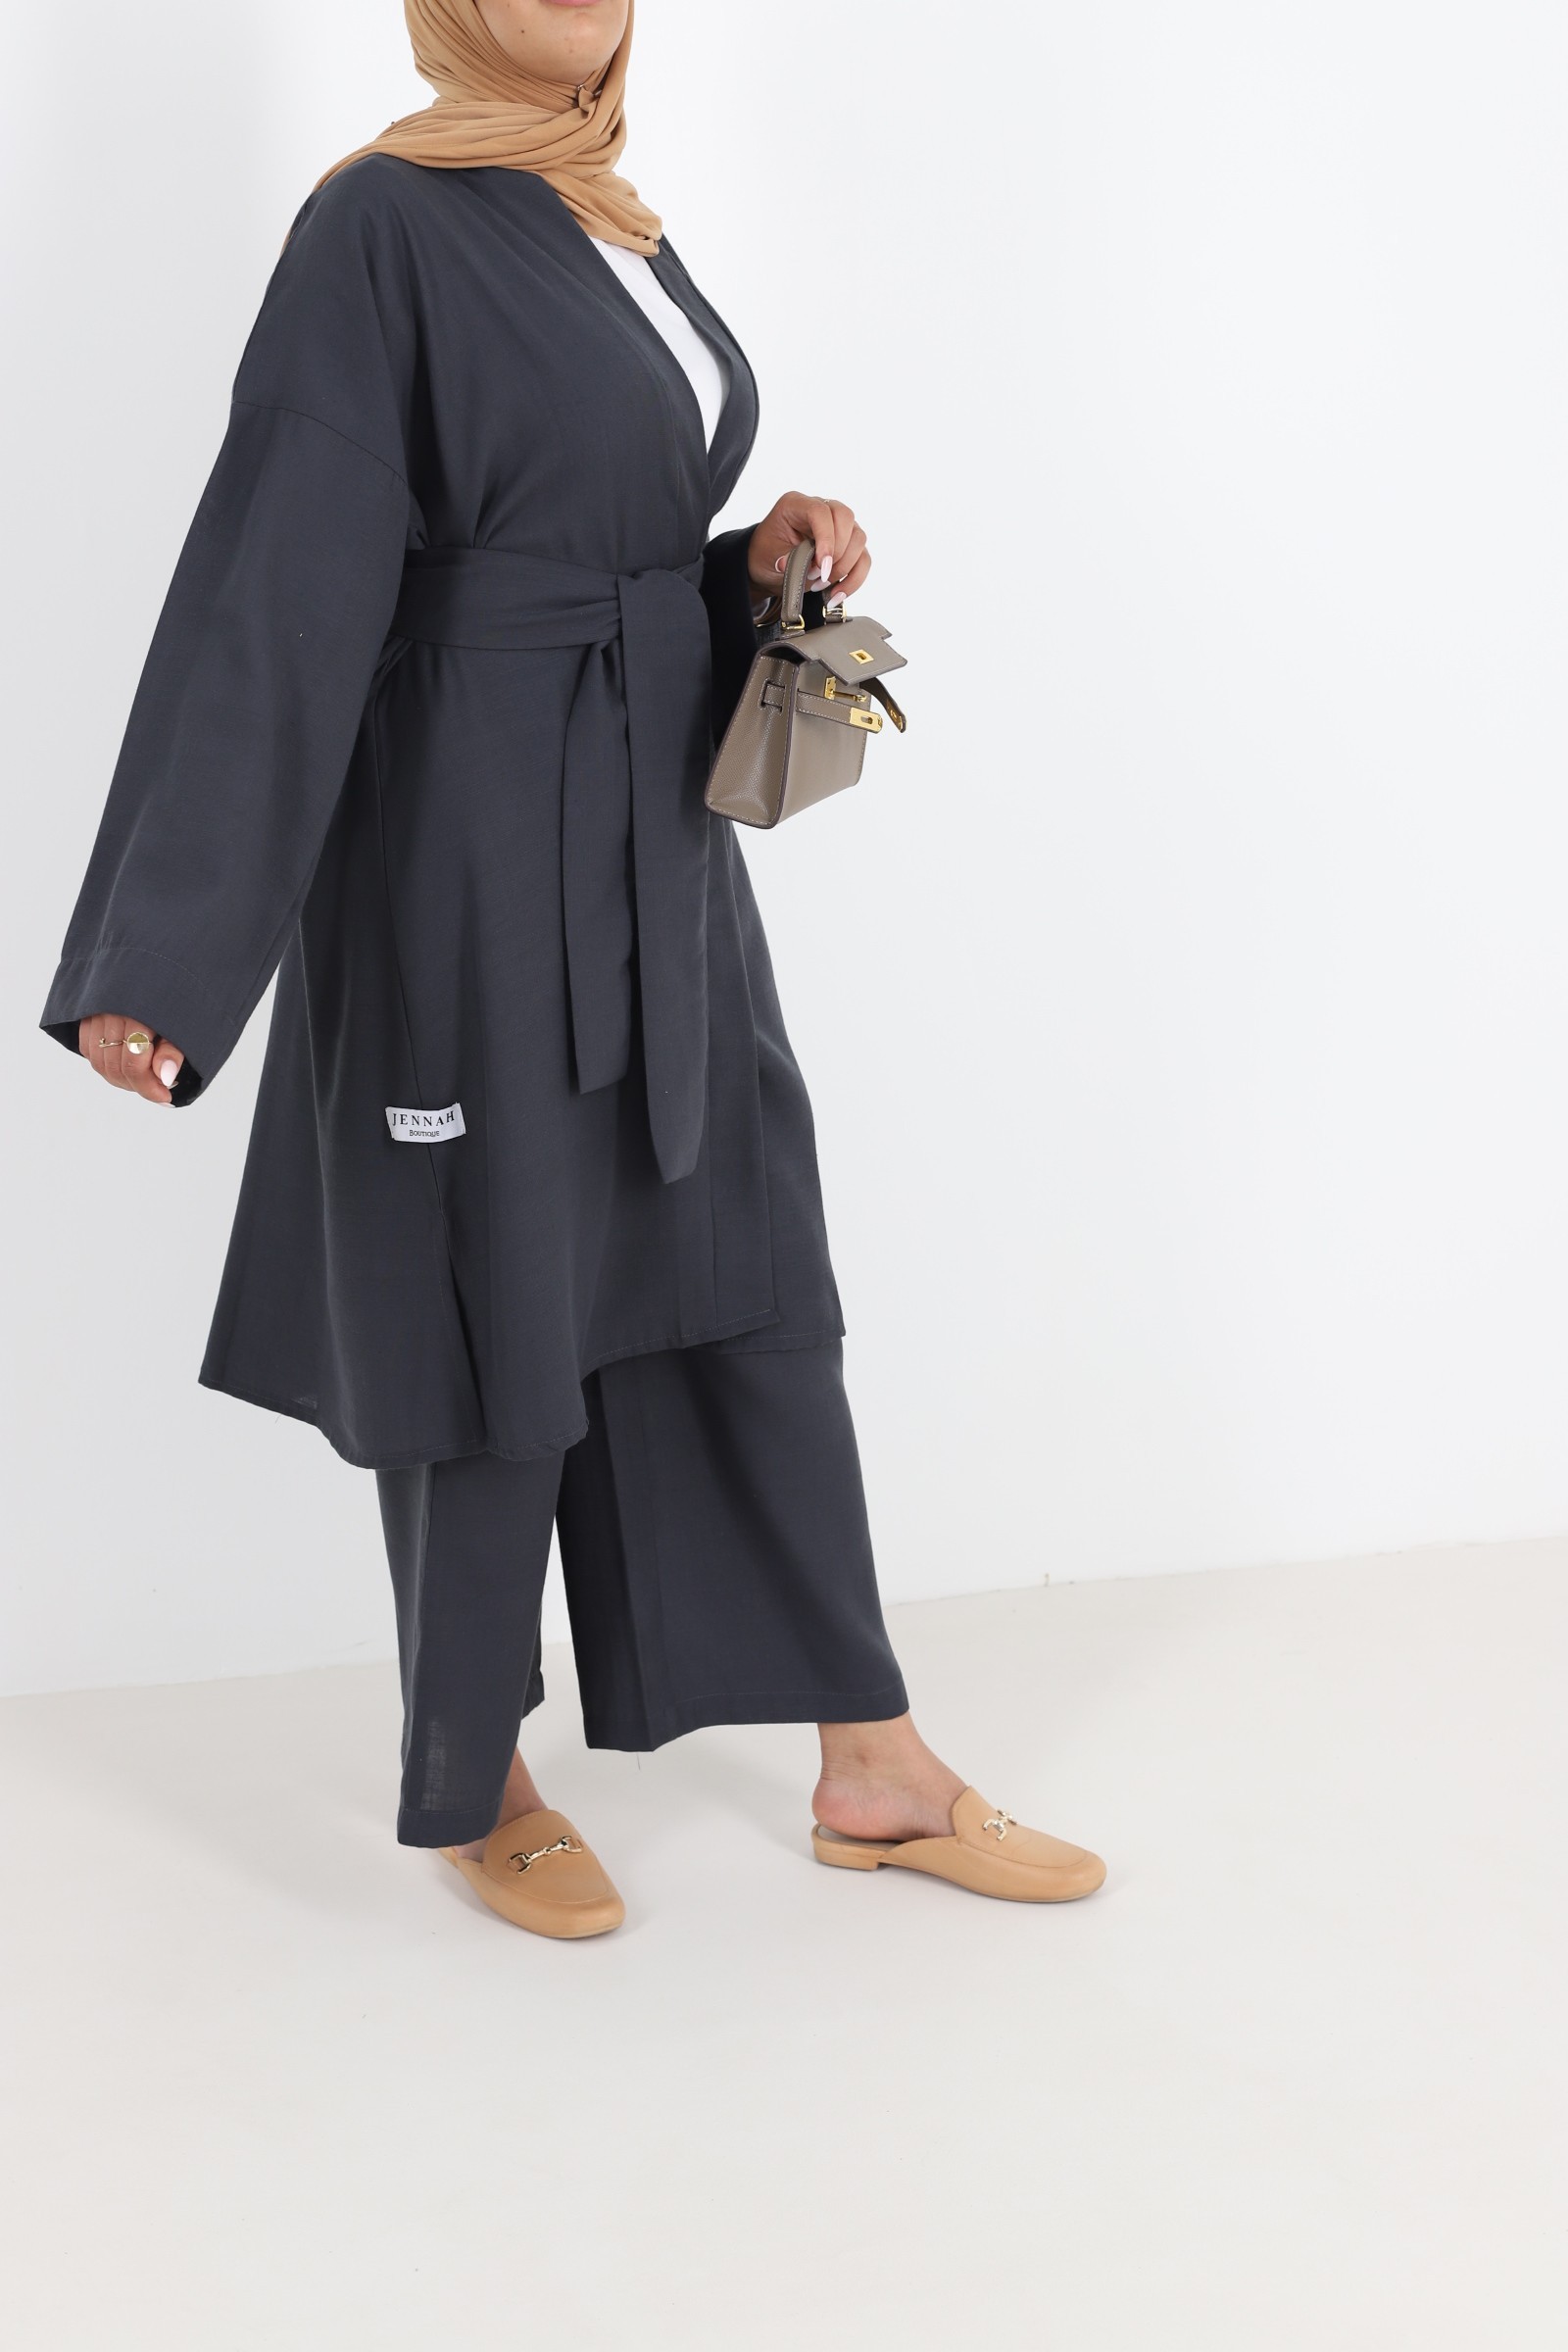 Ensemble pantalon et kimono en lin tenue hijab pour femme musulmane